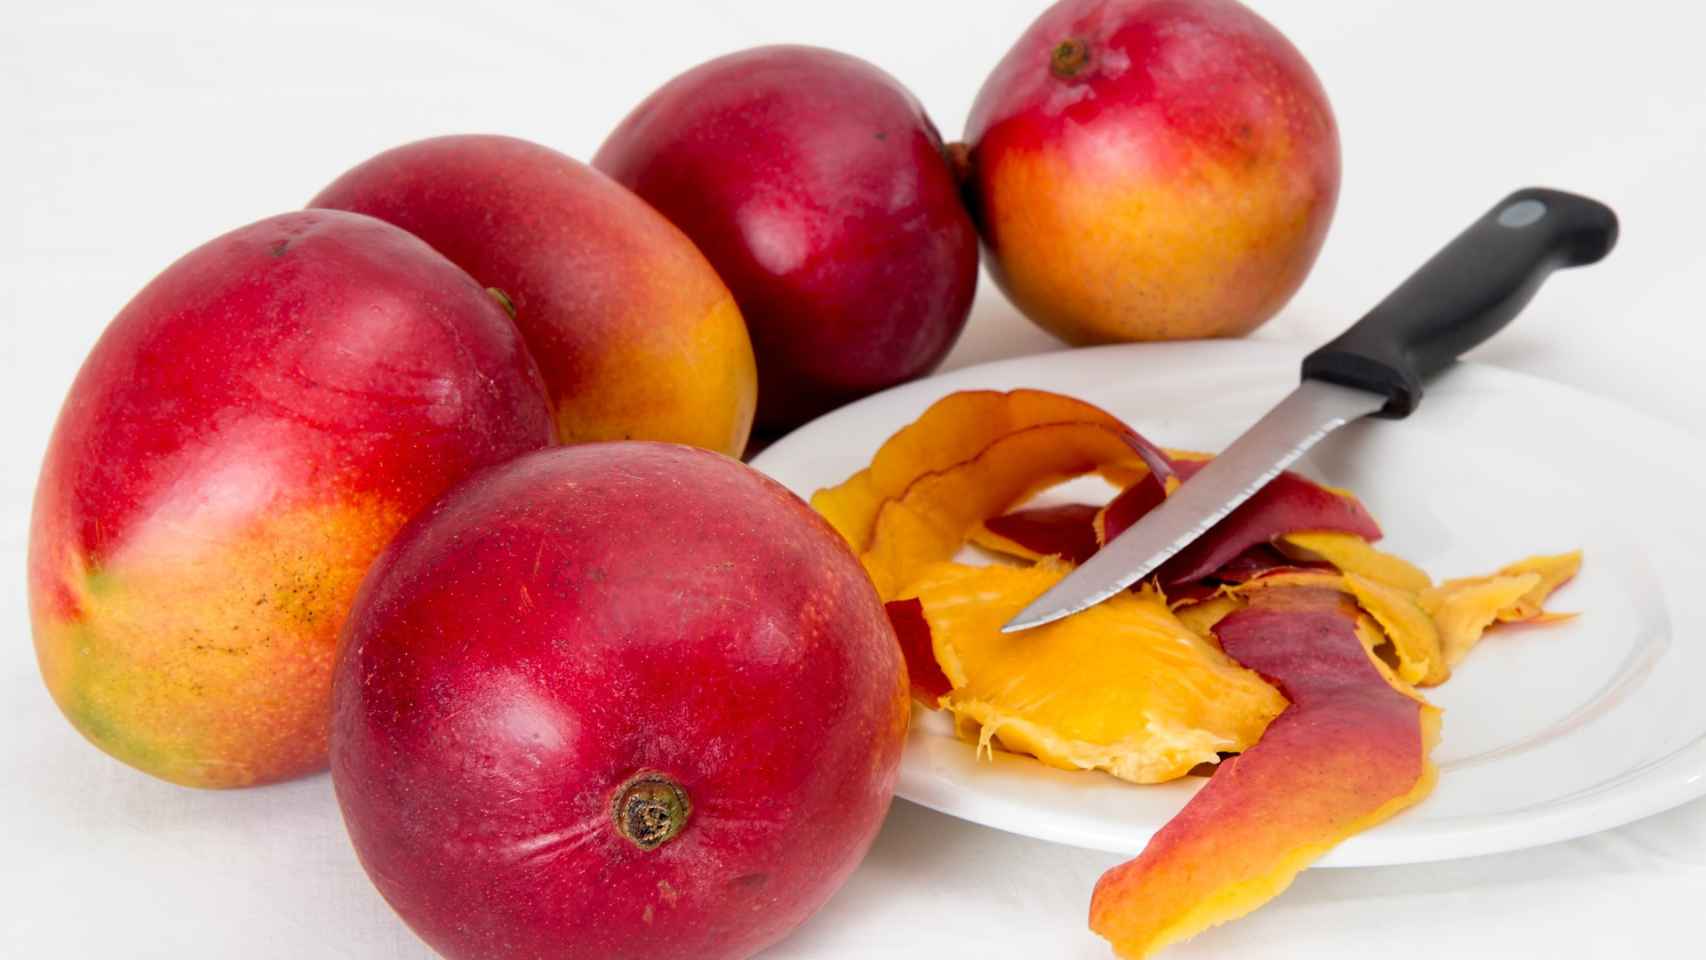 El mango, del cual se extrae esta especia, es un producto muy valorado en muchas gastronomías.